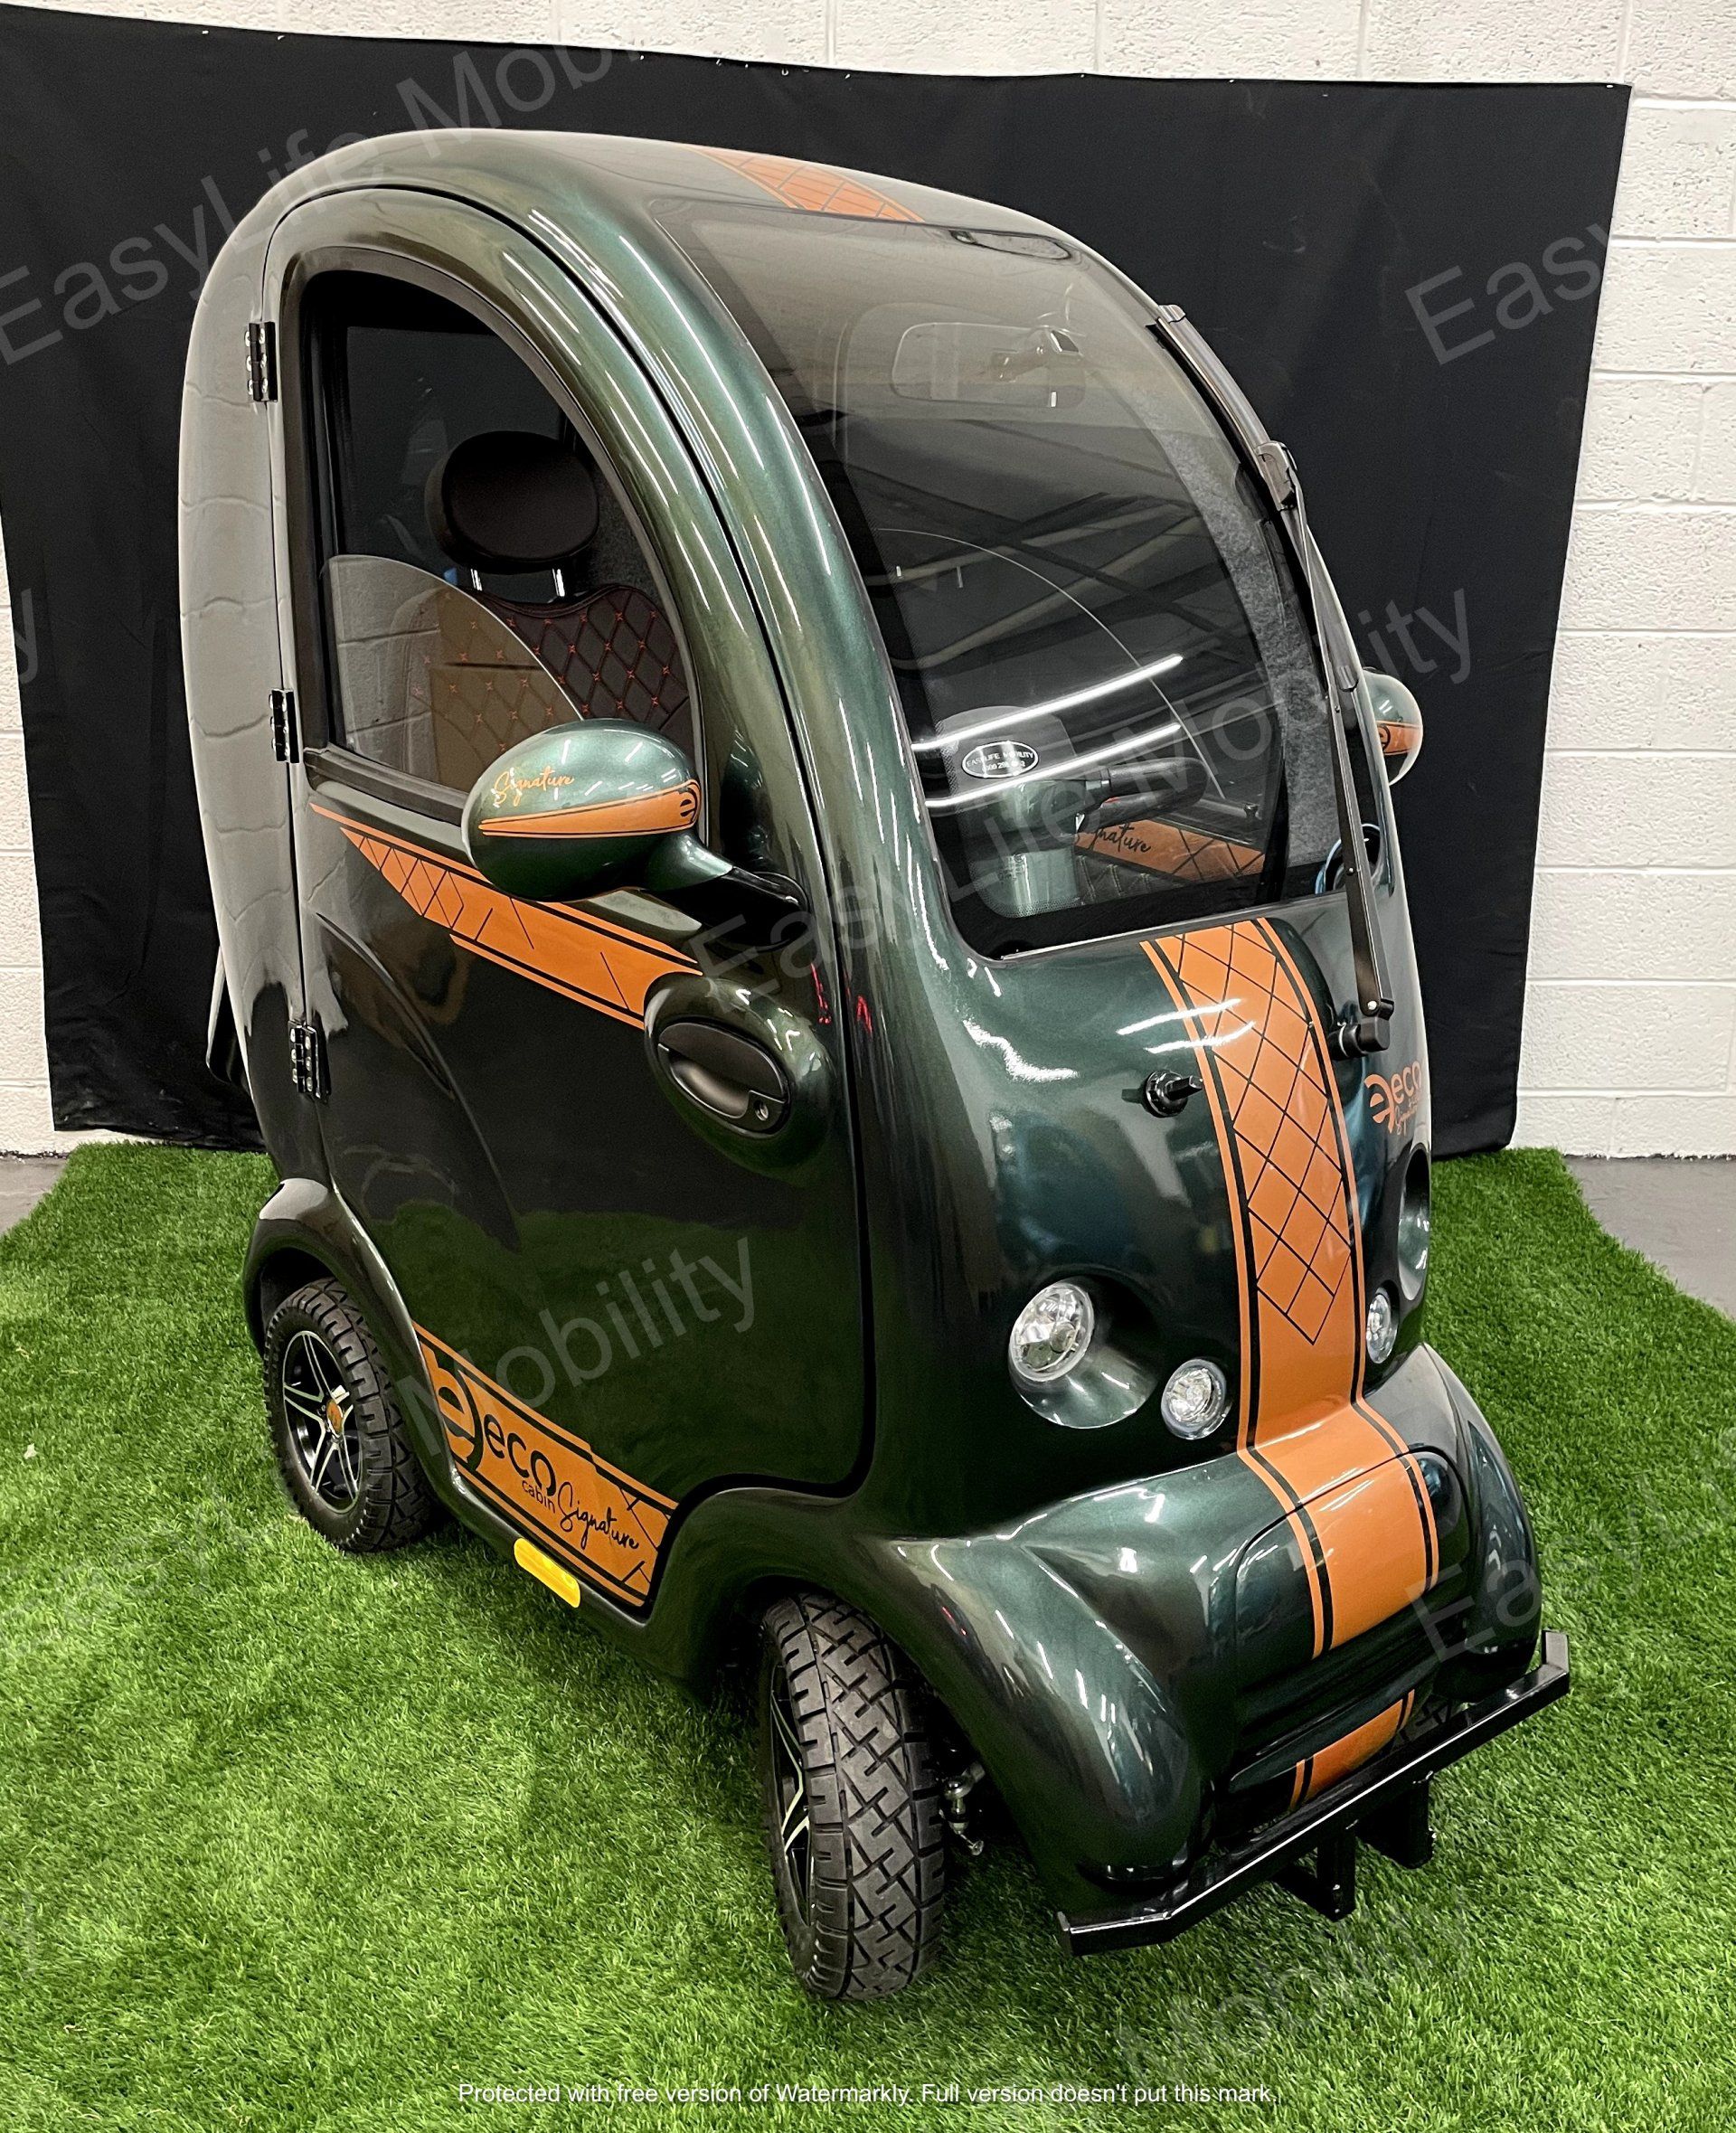 Green & Copper Signature Cabin Scooter 2022